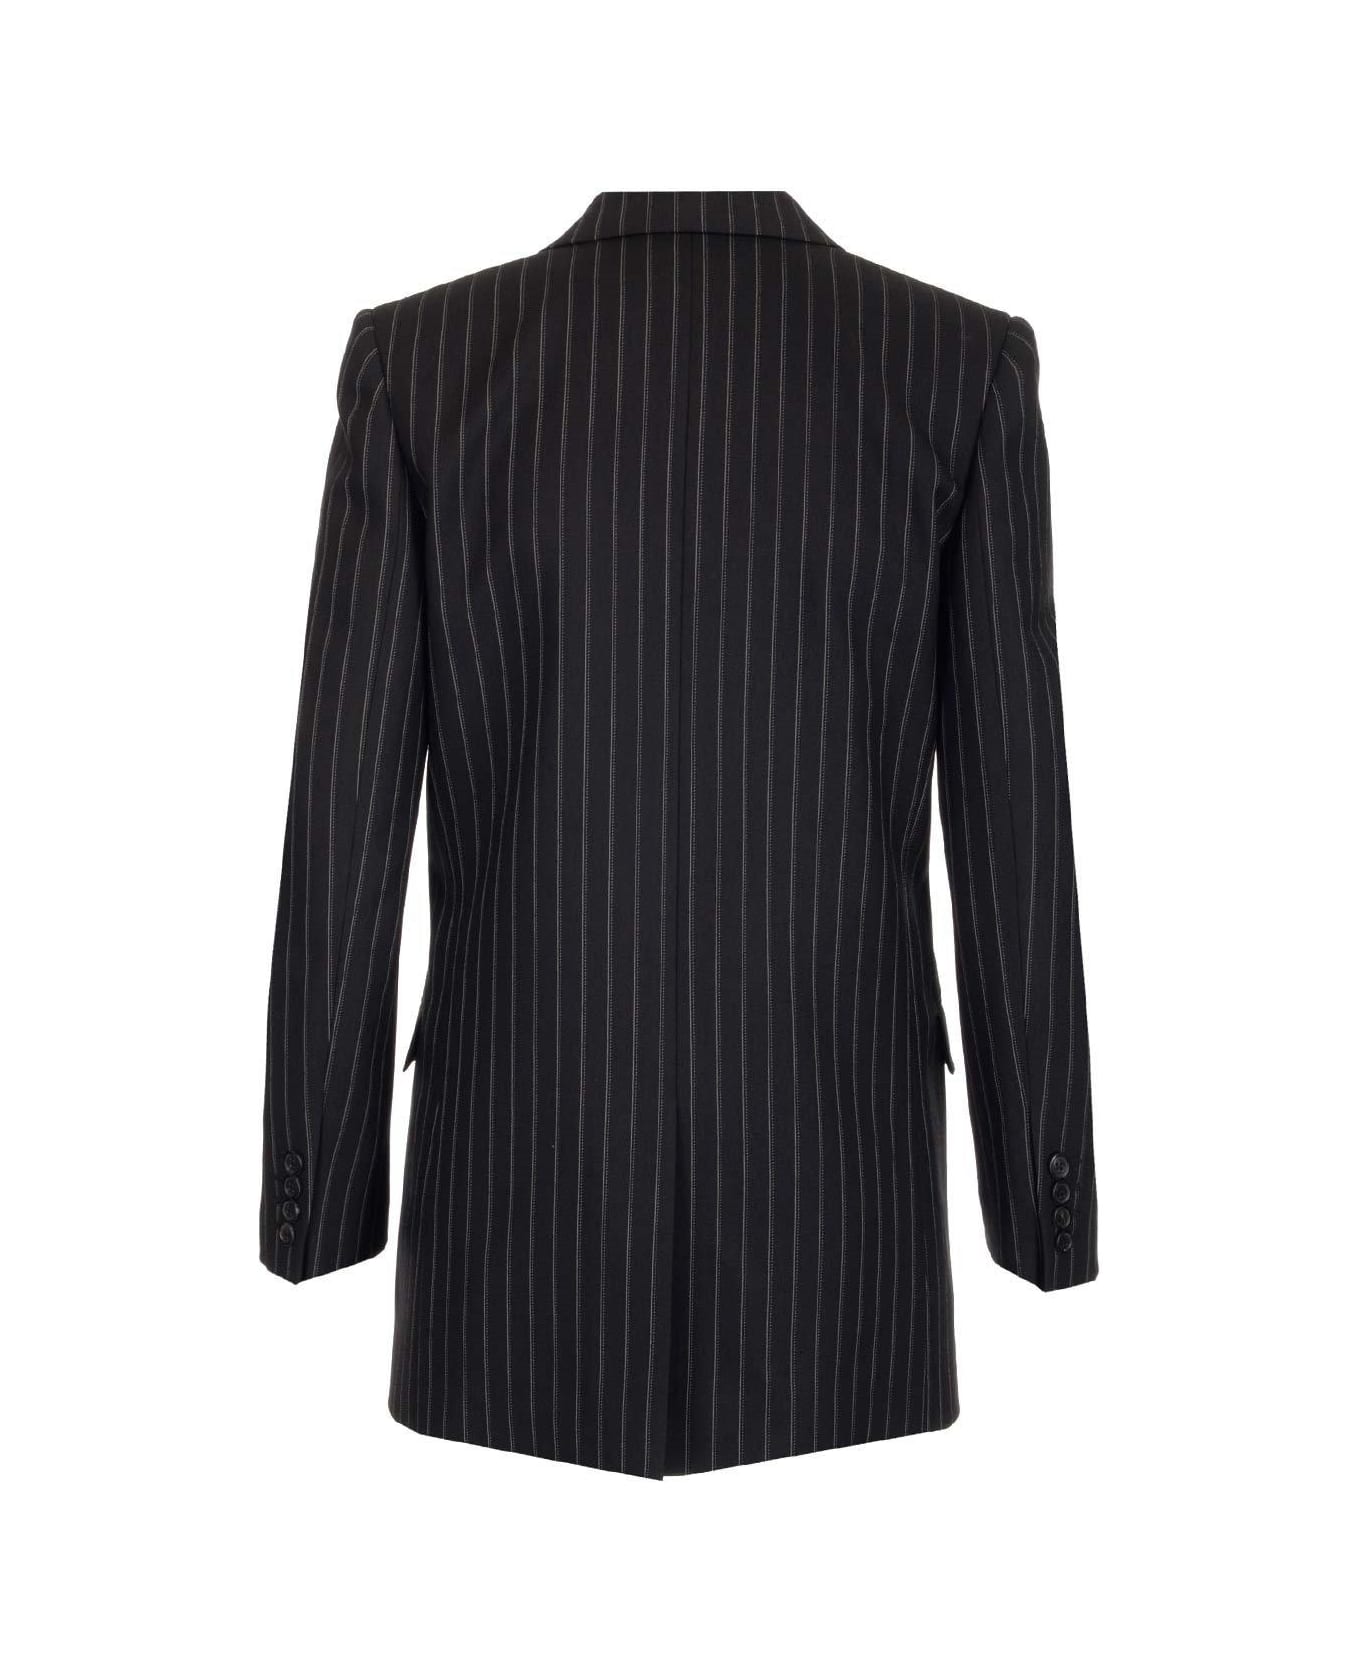 Saint Laurent Pinstripe Tailored Blazer - NOIR CRAIE